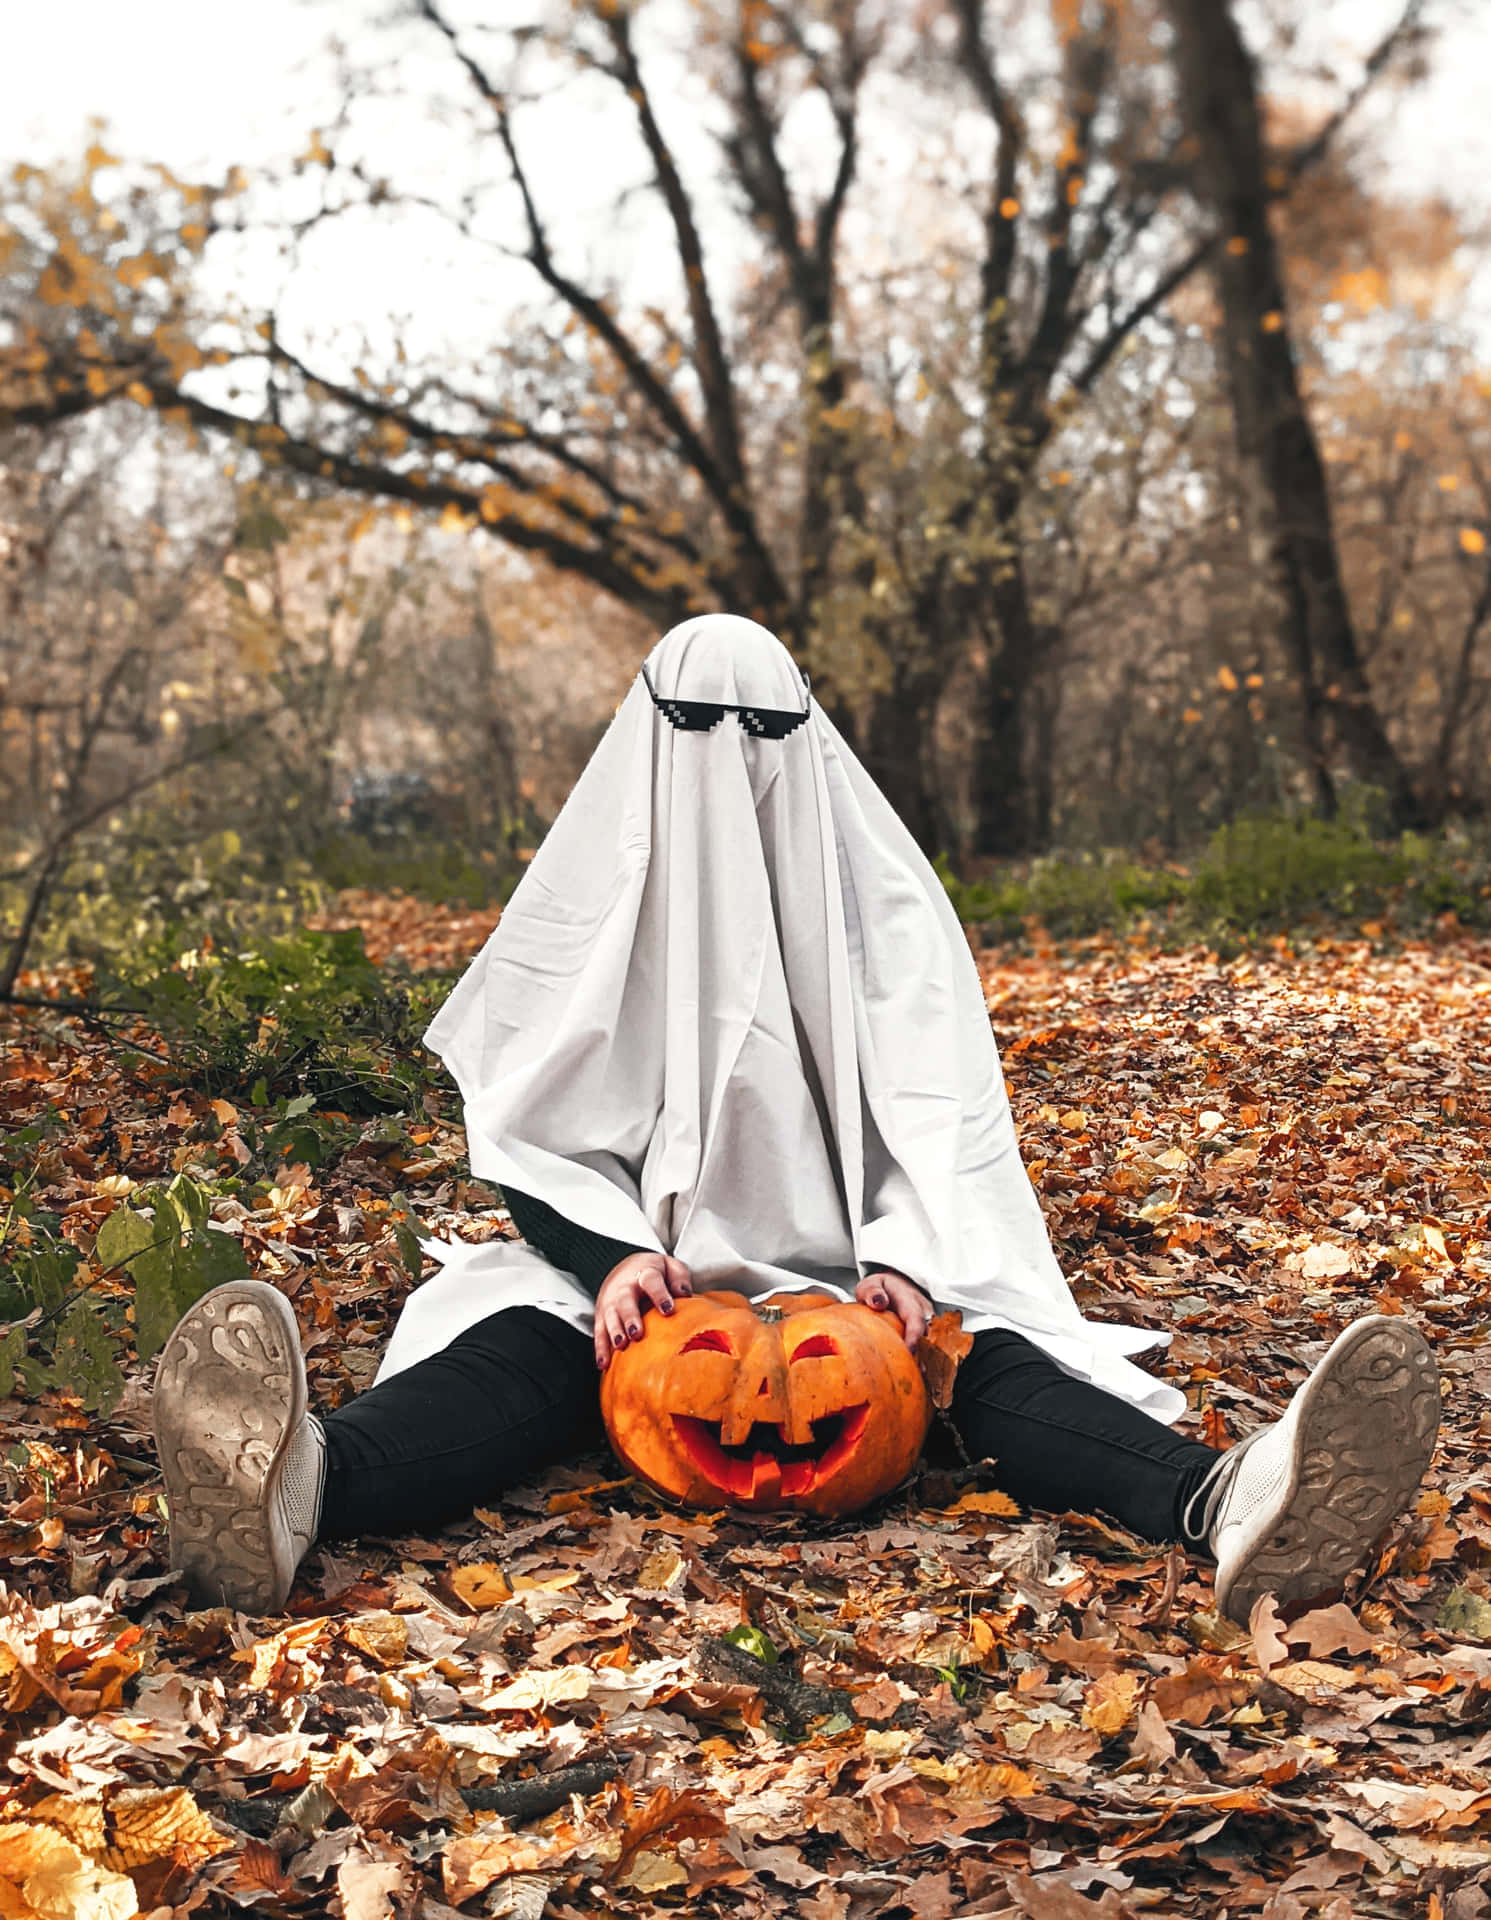 Ghost Costumein Autumn Parkwith Pumpkin Wallpaper